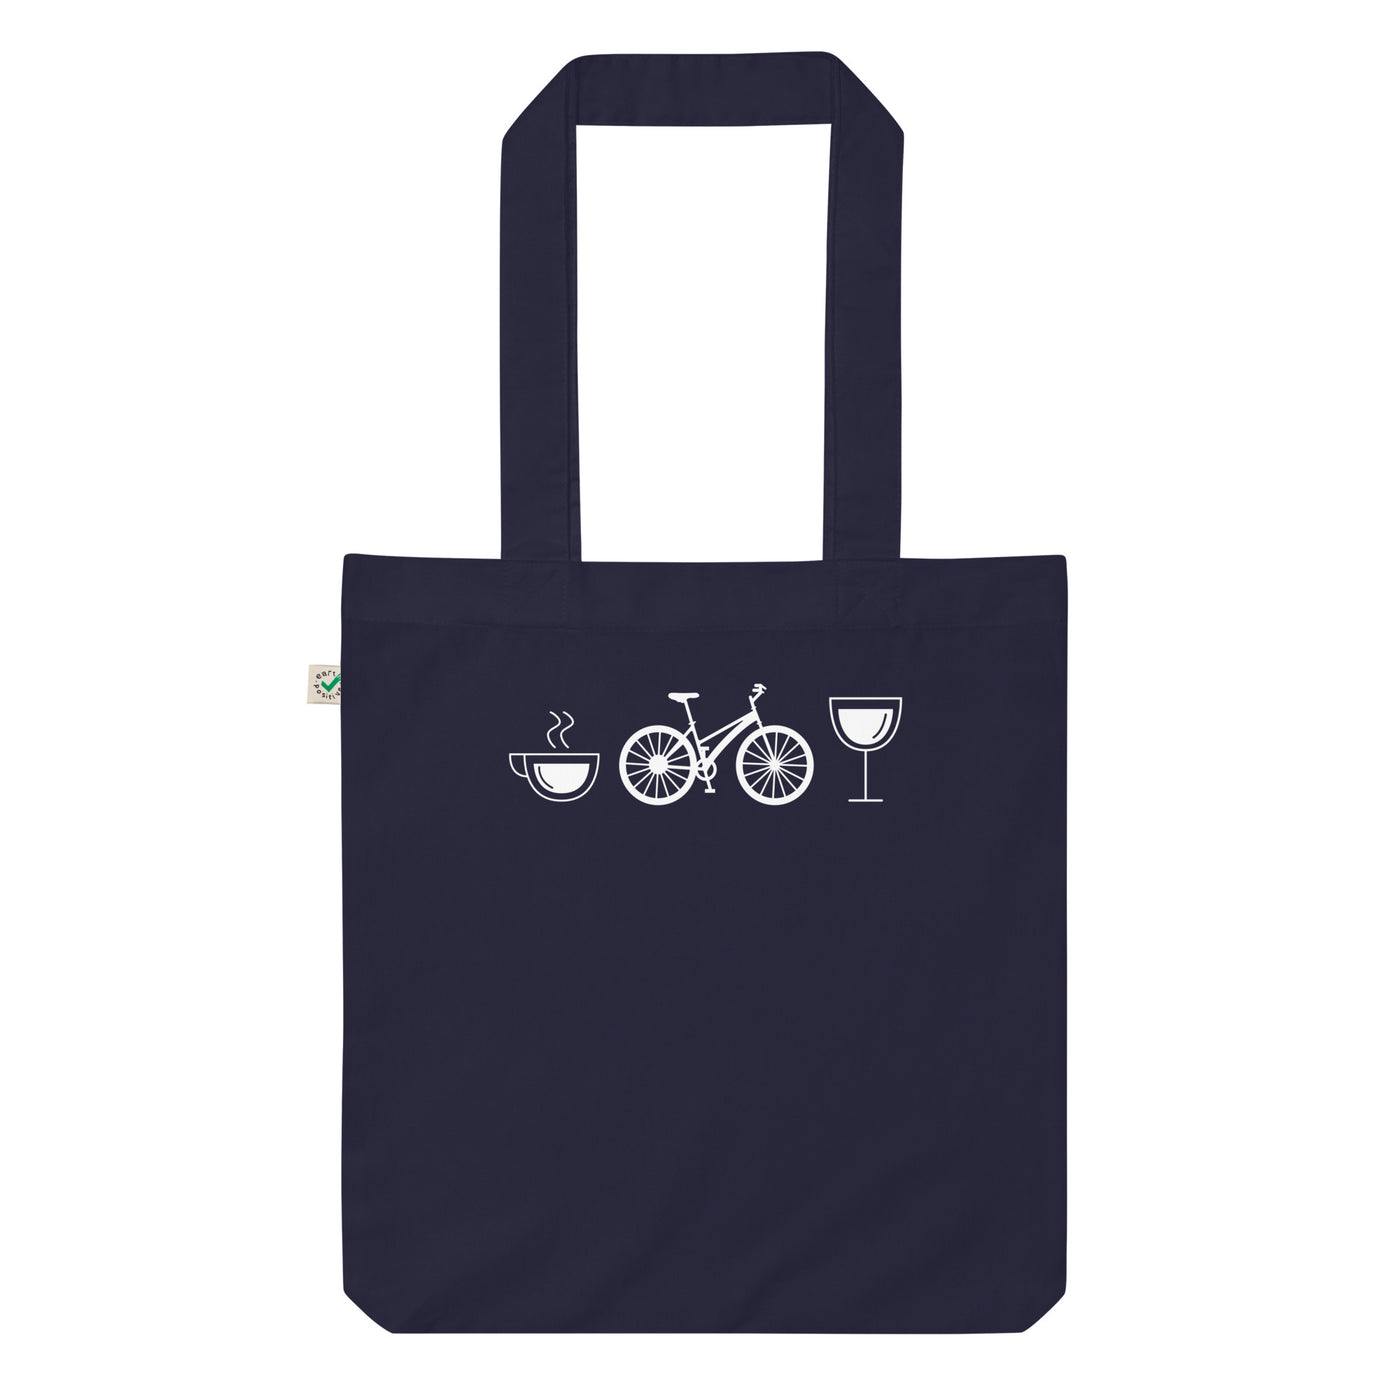 Kaffee, Wein Und Fahrrad - Organic Einkaufstasche fahrrad Navy